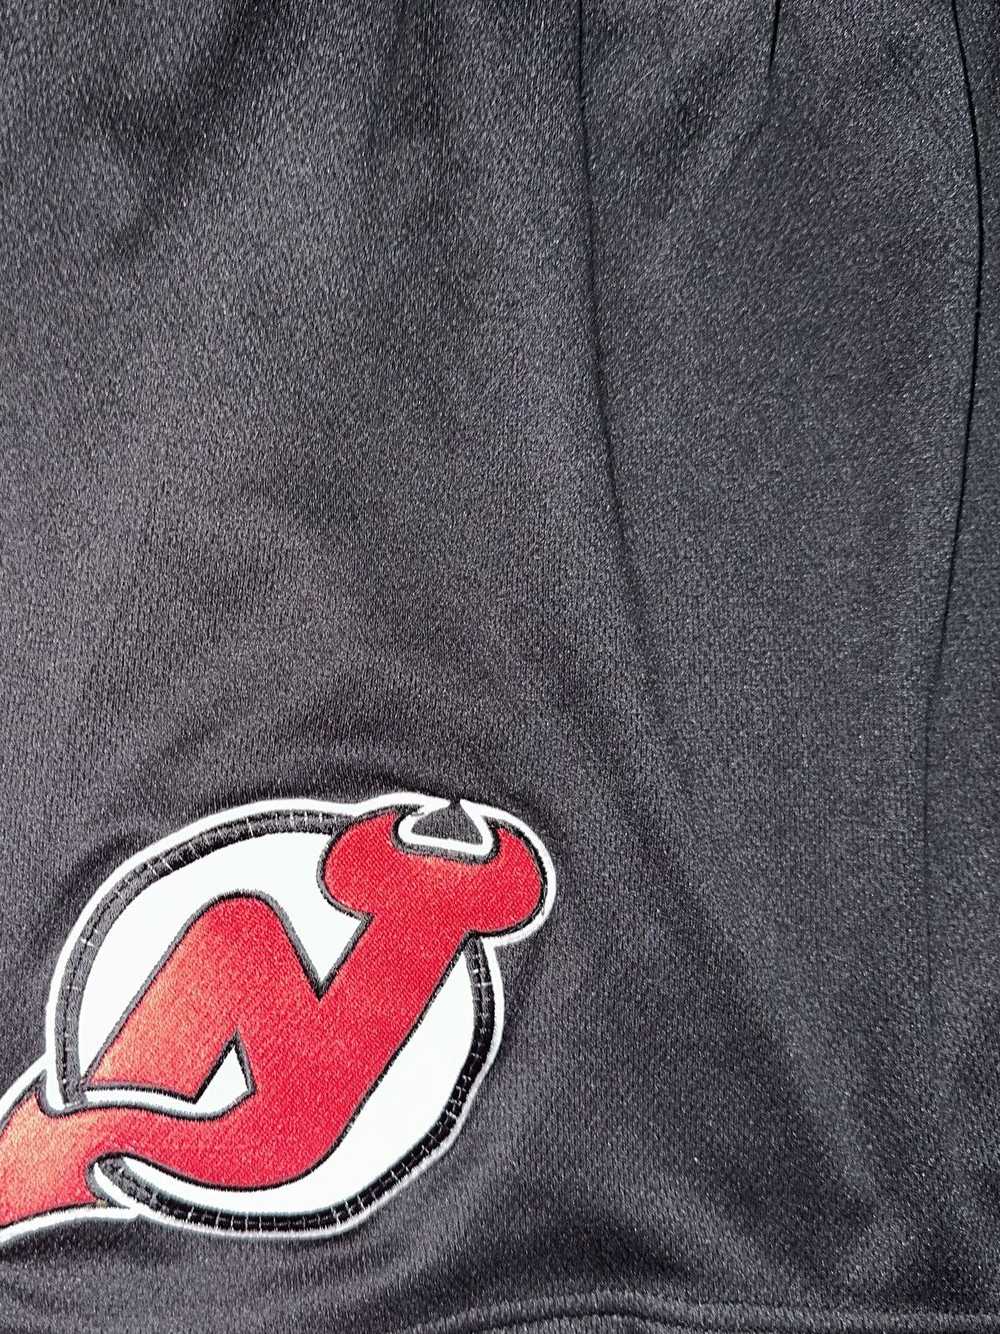 Ccm × NHL New Jersey devils hockey shorts - image 3